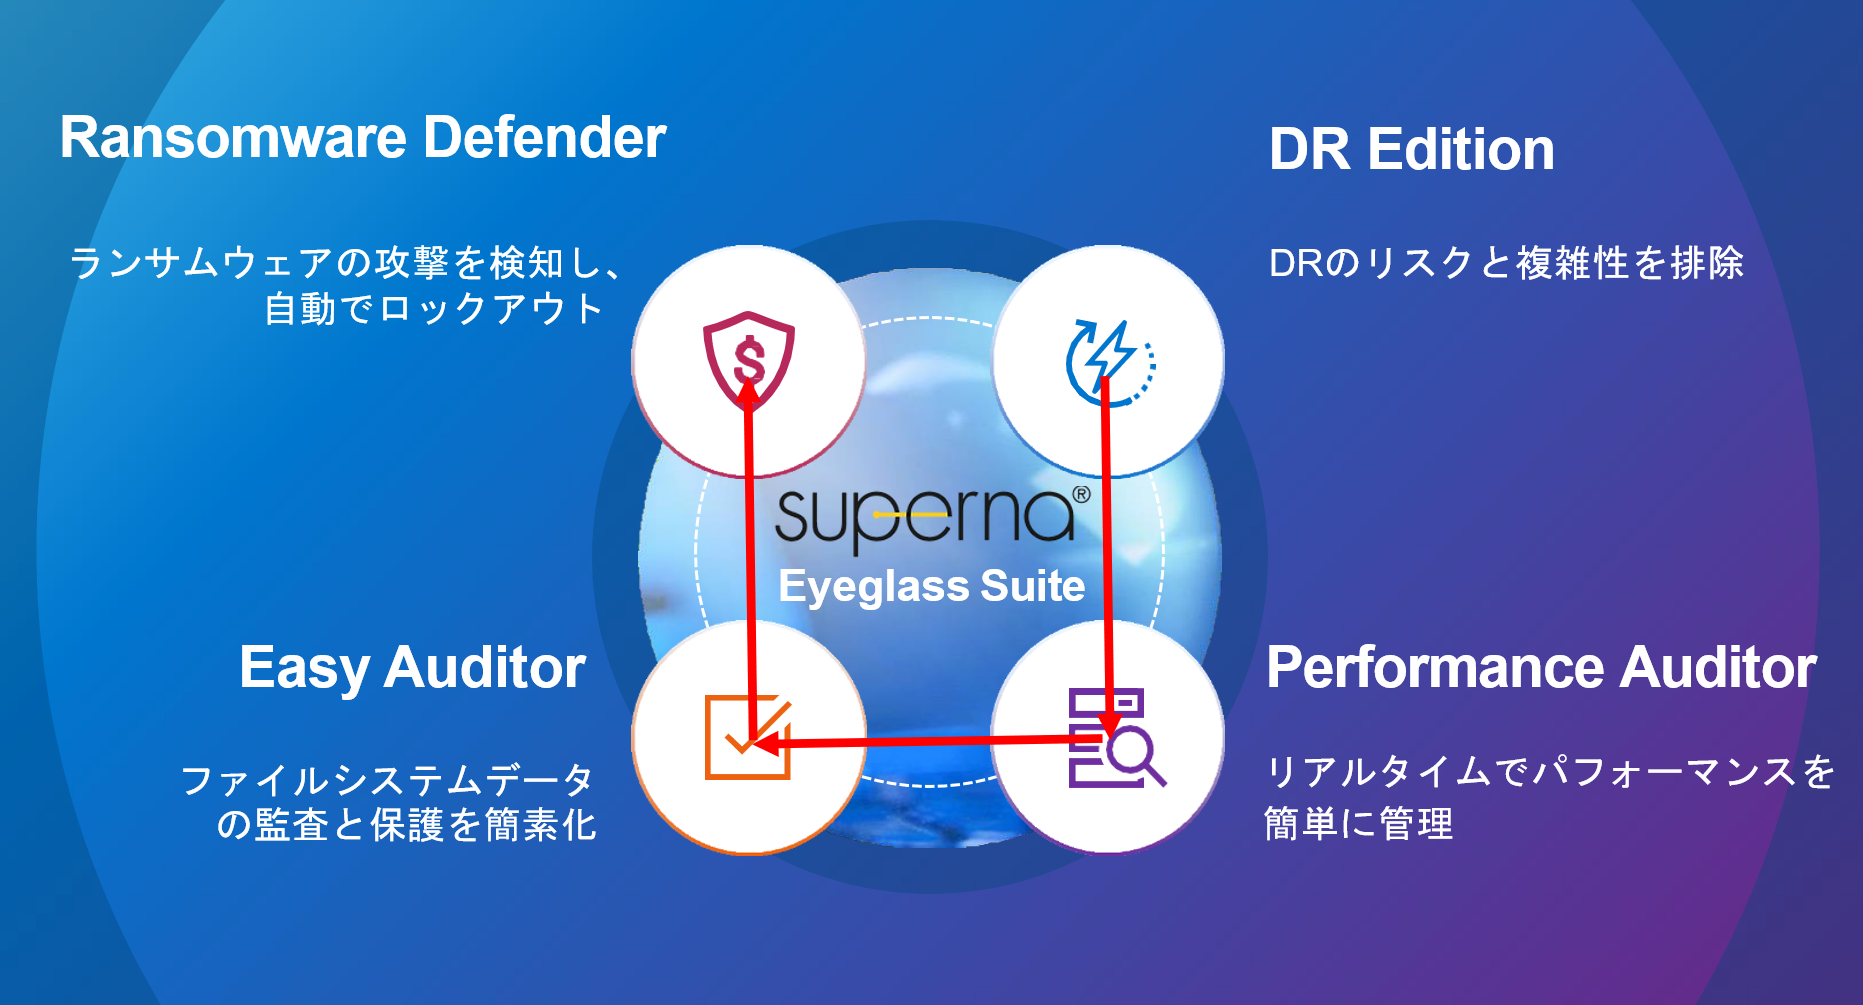 Superna社「Eyeglass」製品群によるデータ保護